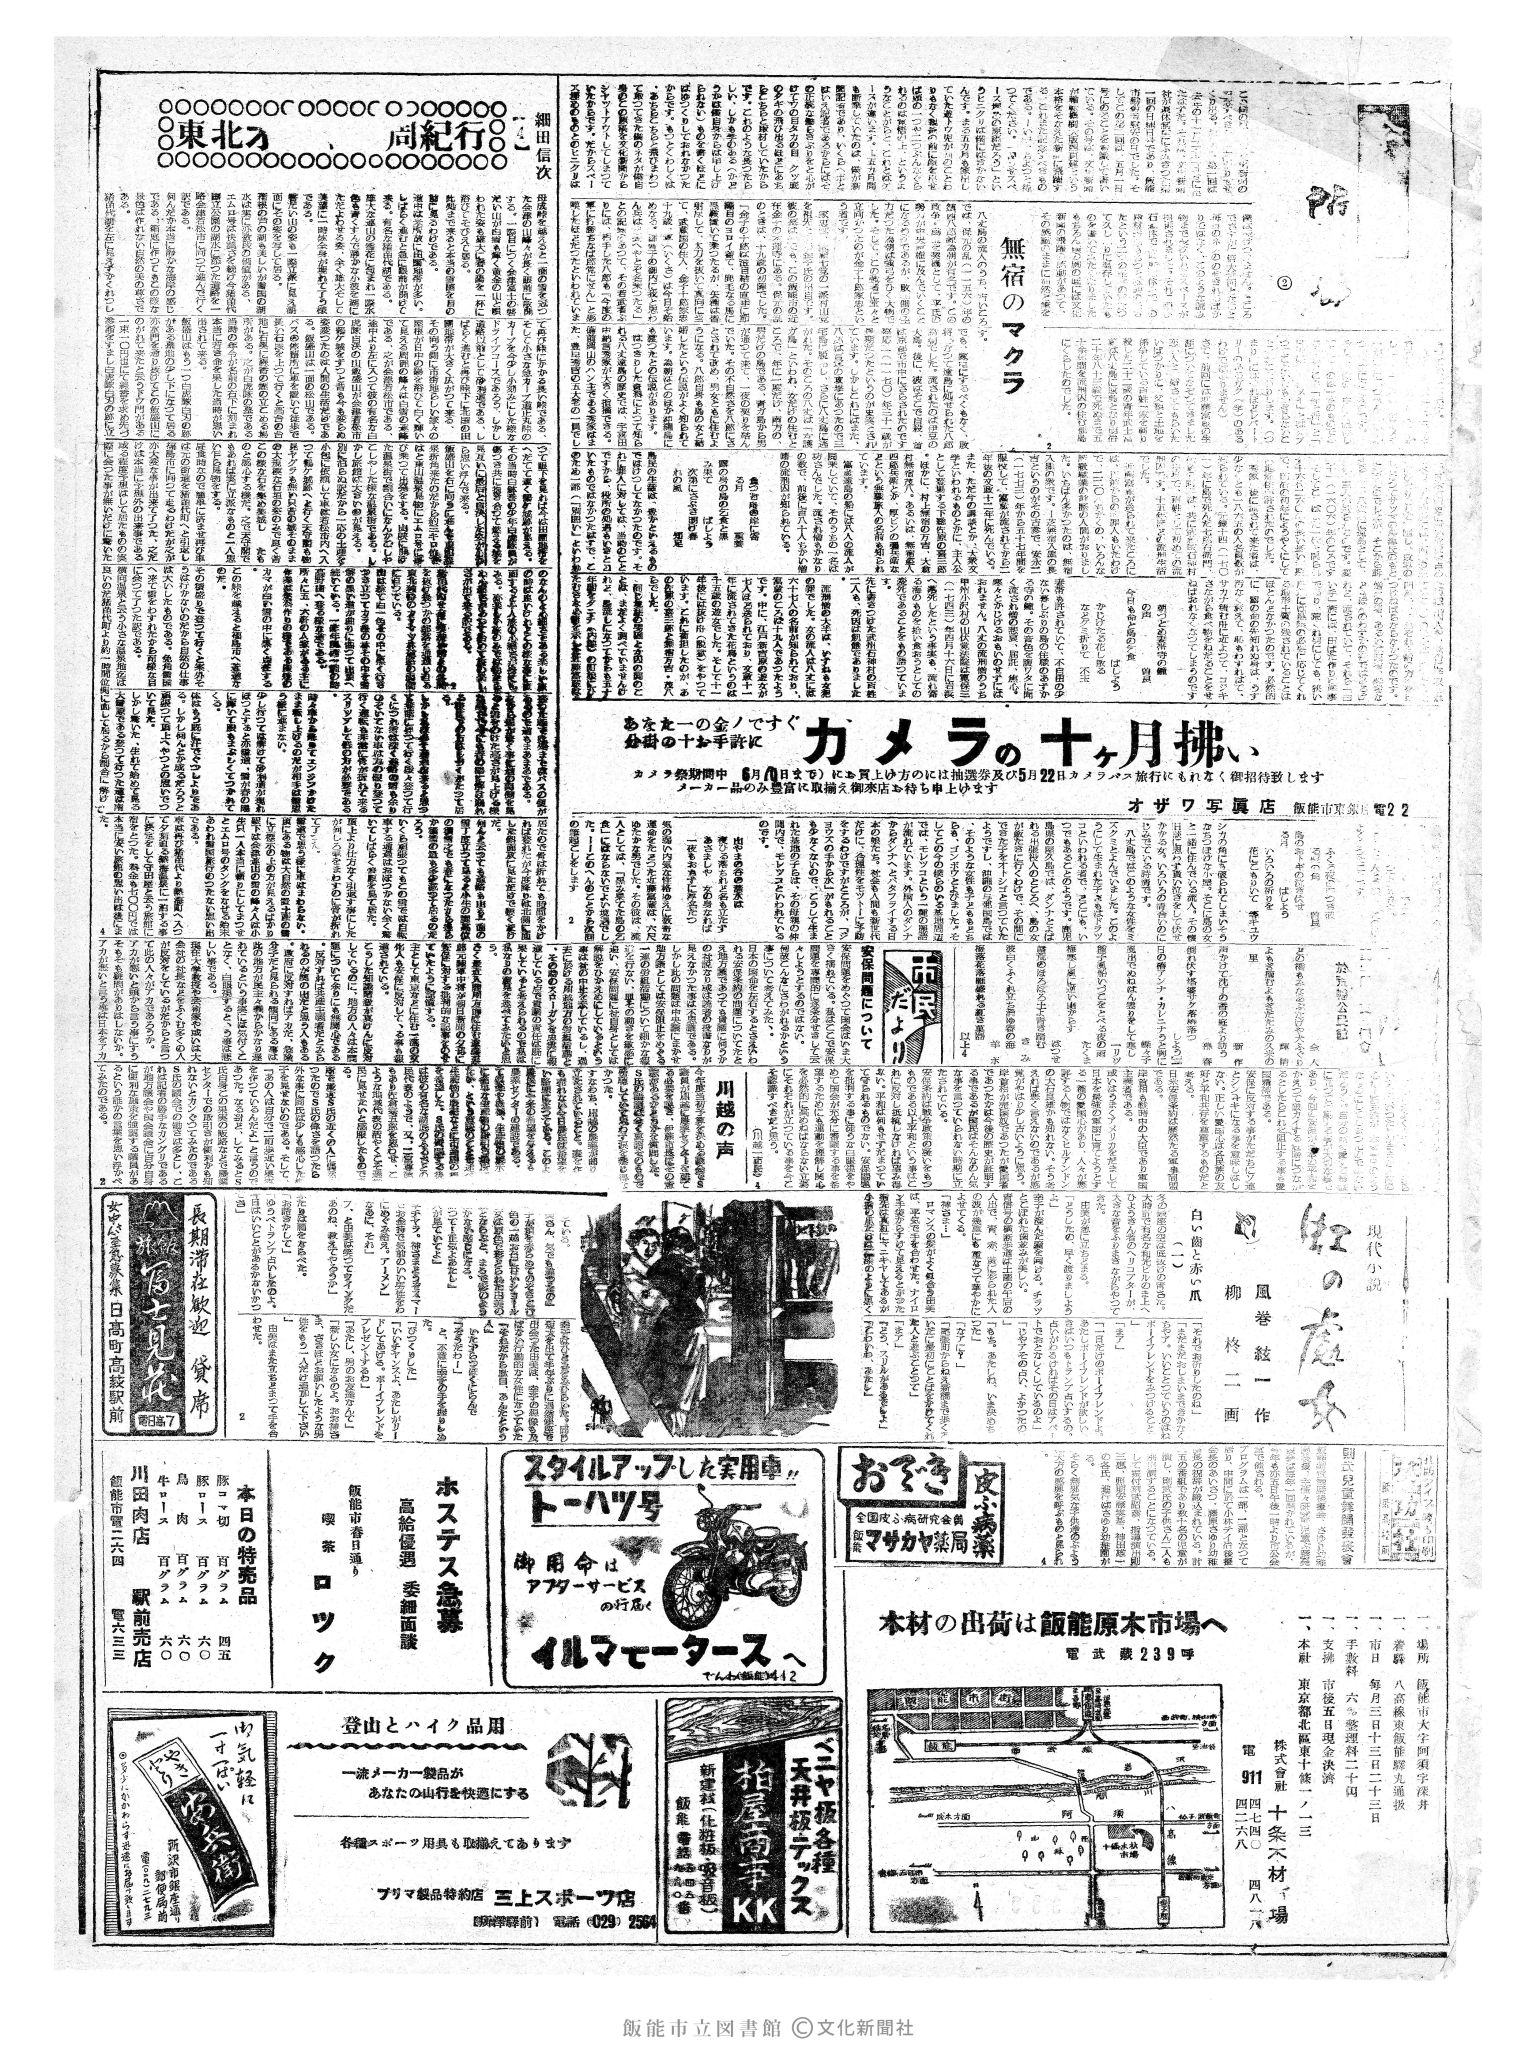 昭和35年5月1日3面 (第3519号) 2ページと同じ内容が印刷されています